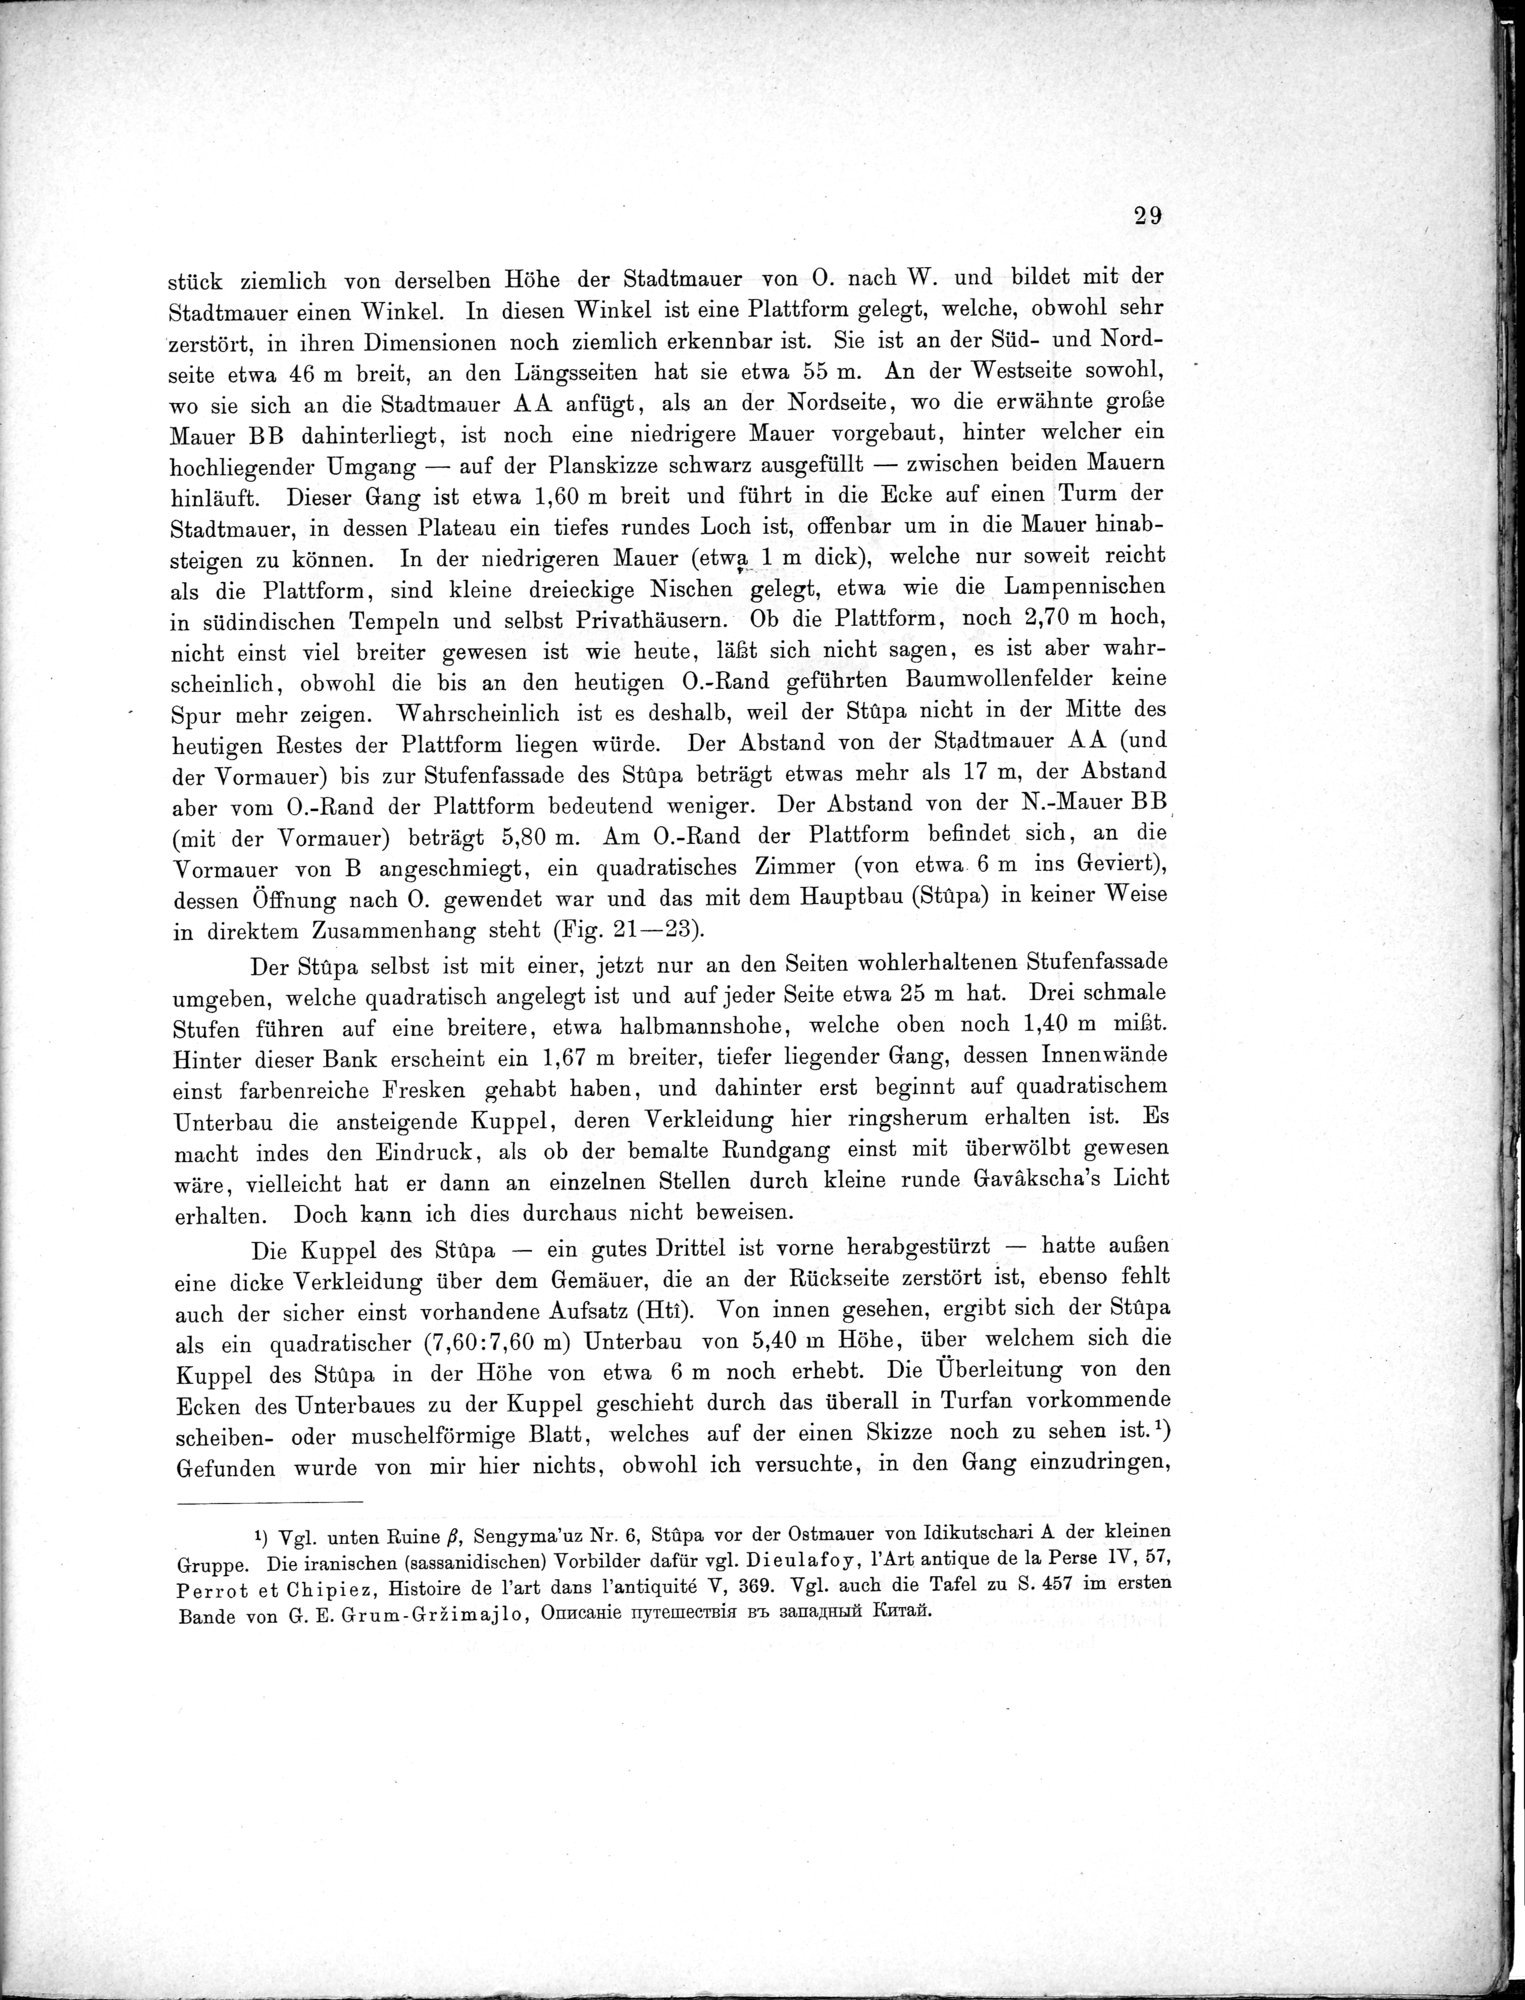 Bericht über archäologische Arbeiten in Idikutschari und Umgebung im Winter 1902-1903 : vol.1 / Page 39 (Grayscale High Resolution Image)